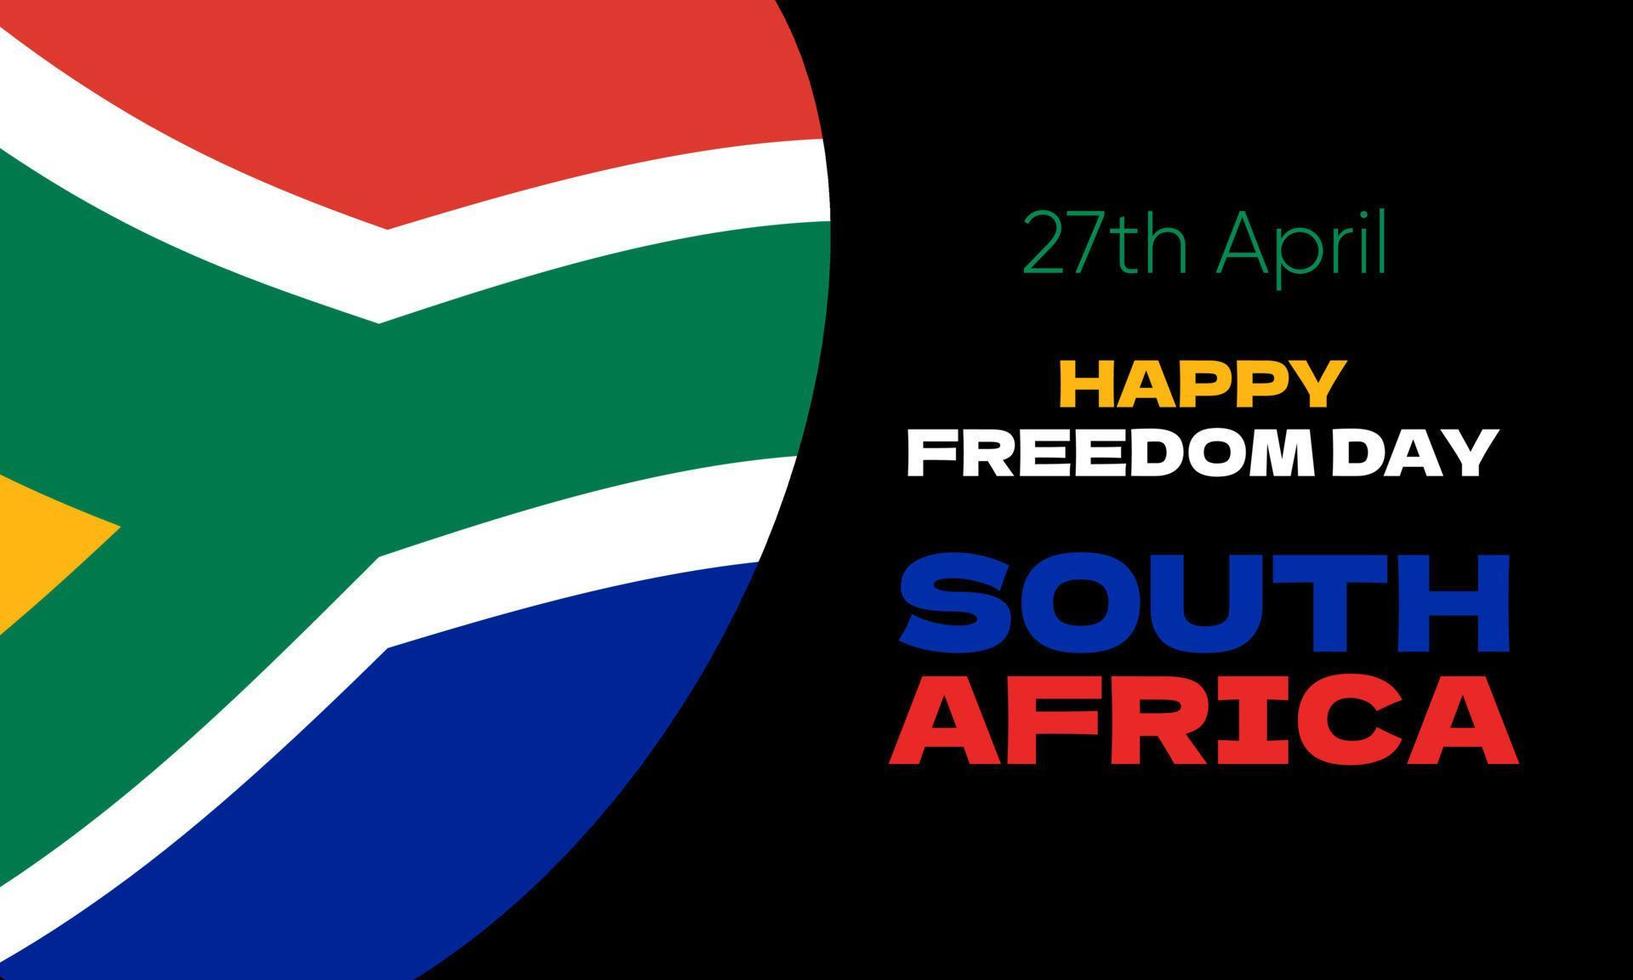 sur África libertad día africaans vryheidsdag fondo, póster, tarjeta, bandera diseño. vector